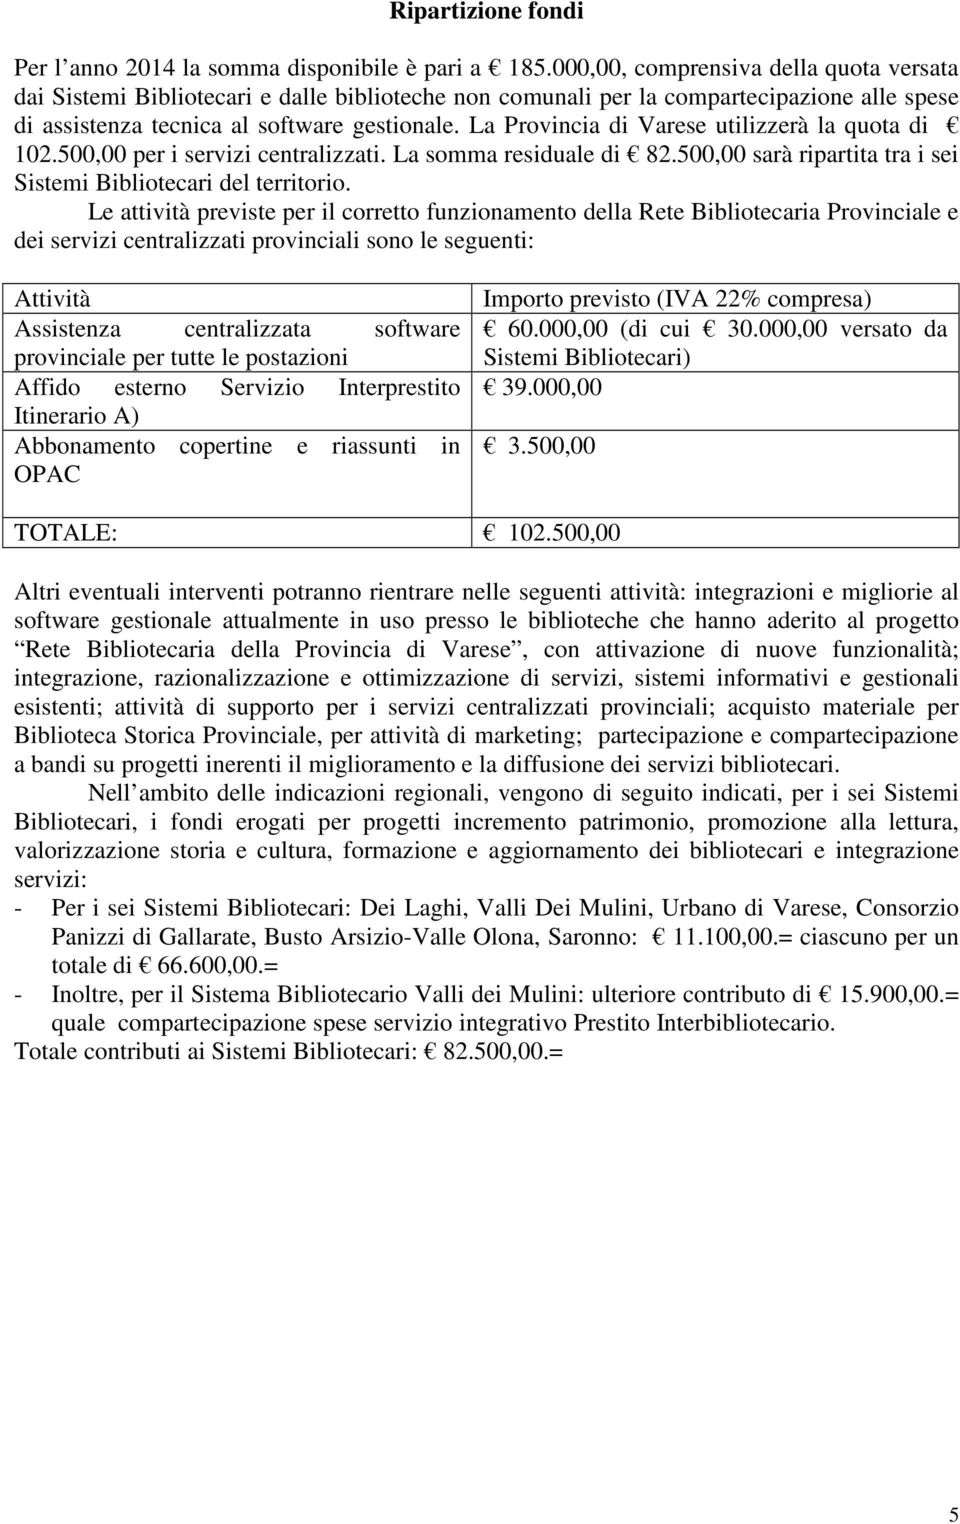 La Provincia di Varese utilizzerà la quota di 102.500,00 per i servizi centralizzati. La somma residuale di 82.500,00 sarà ripartita tra i sei Sistemi Bibliotecari del territorio.